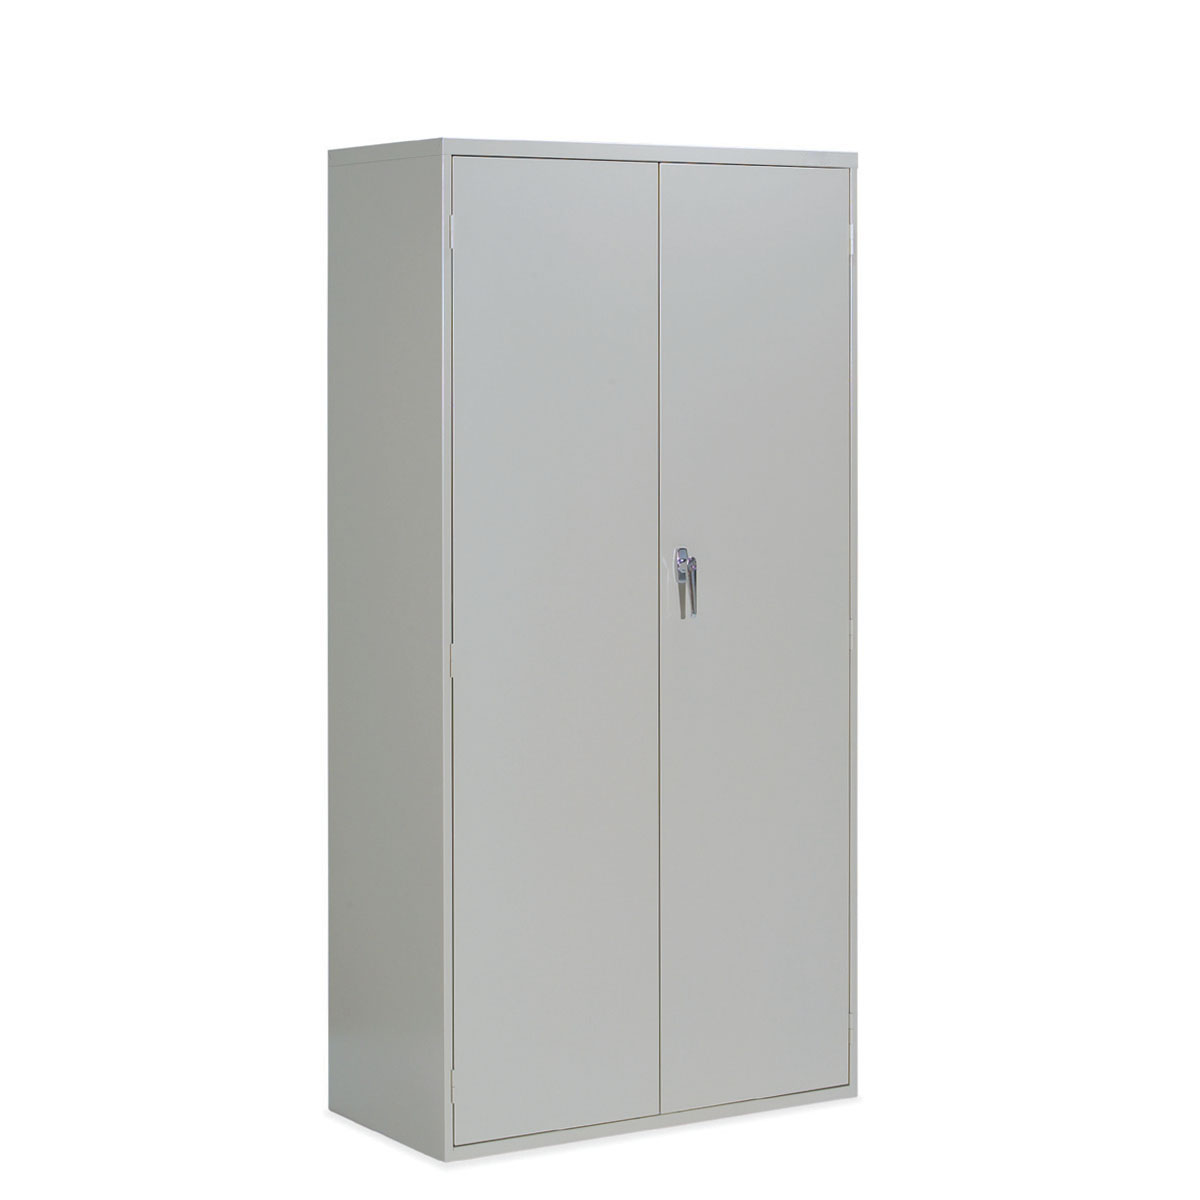 9300 Series Storage Cabinets